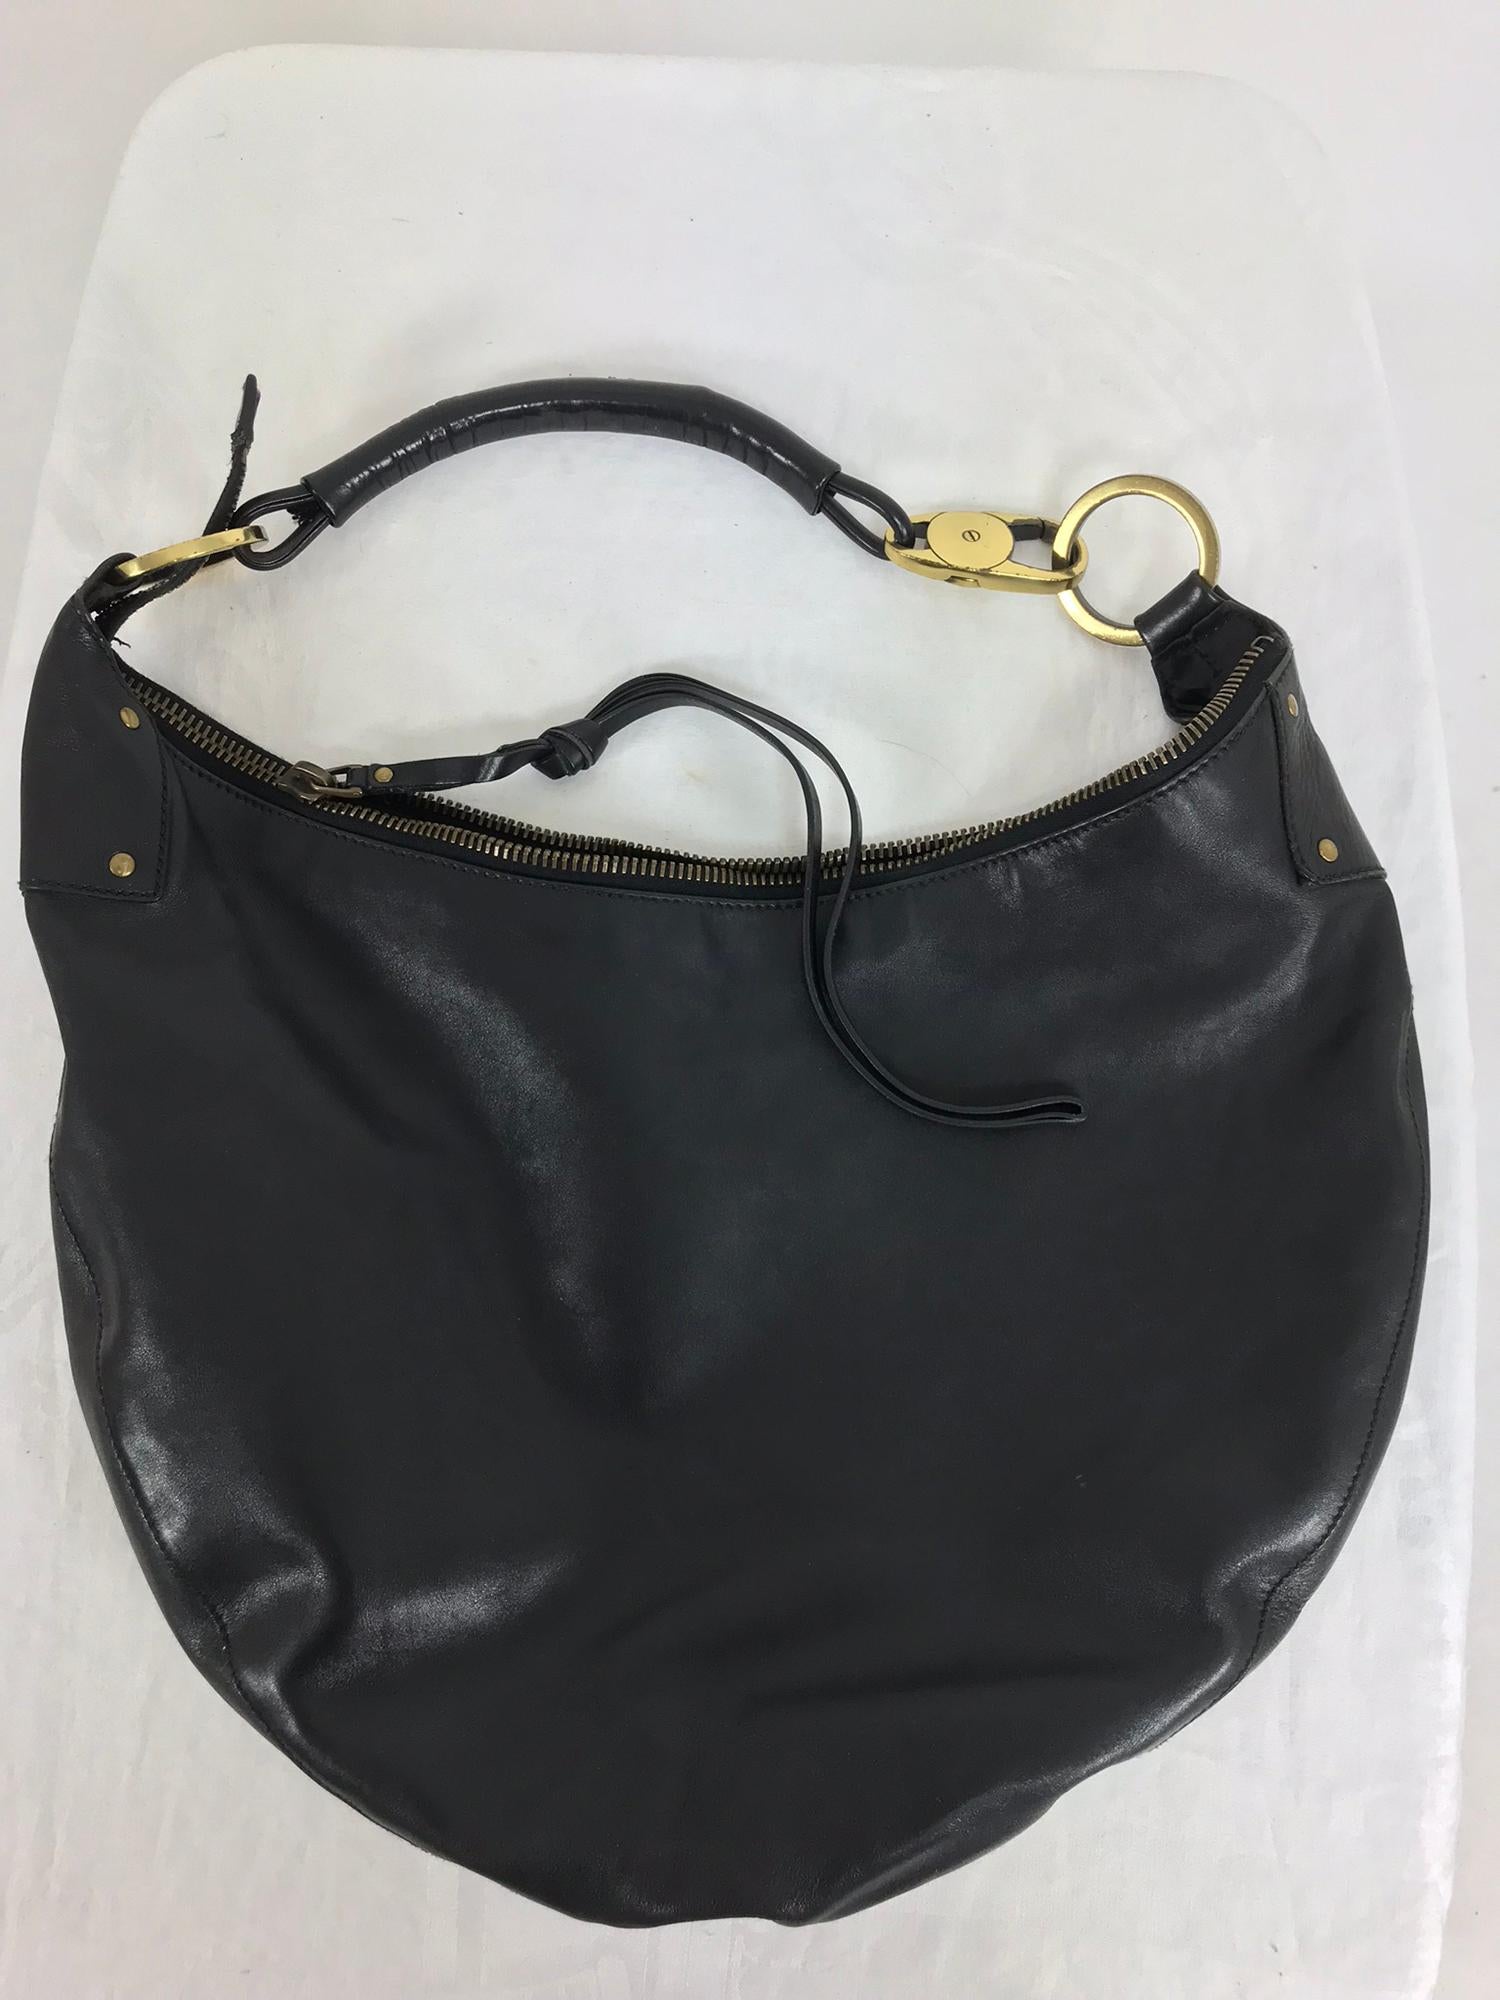 Gucci Black Leather shoulder bag with gold hardware 6